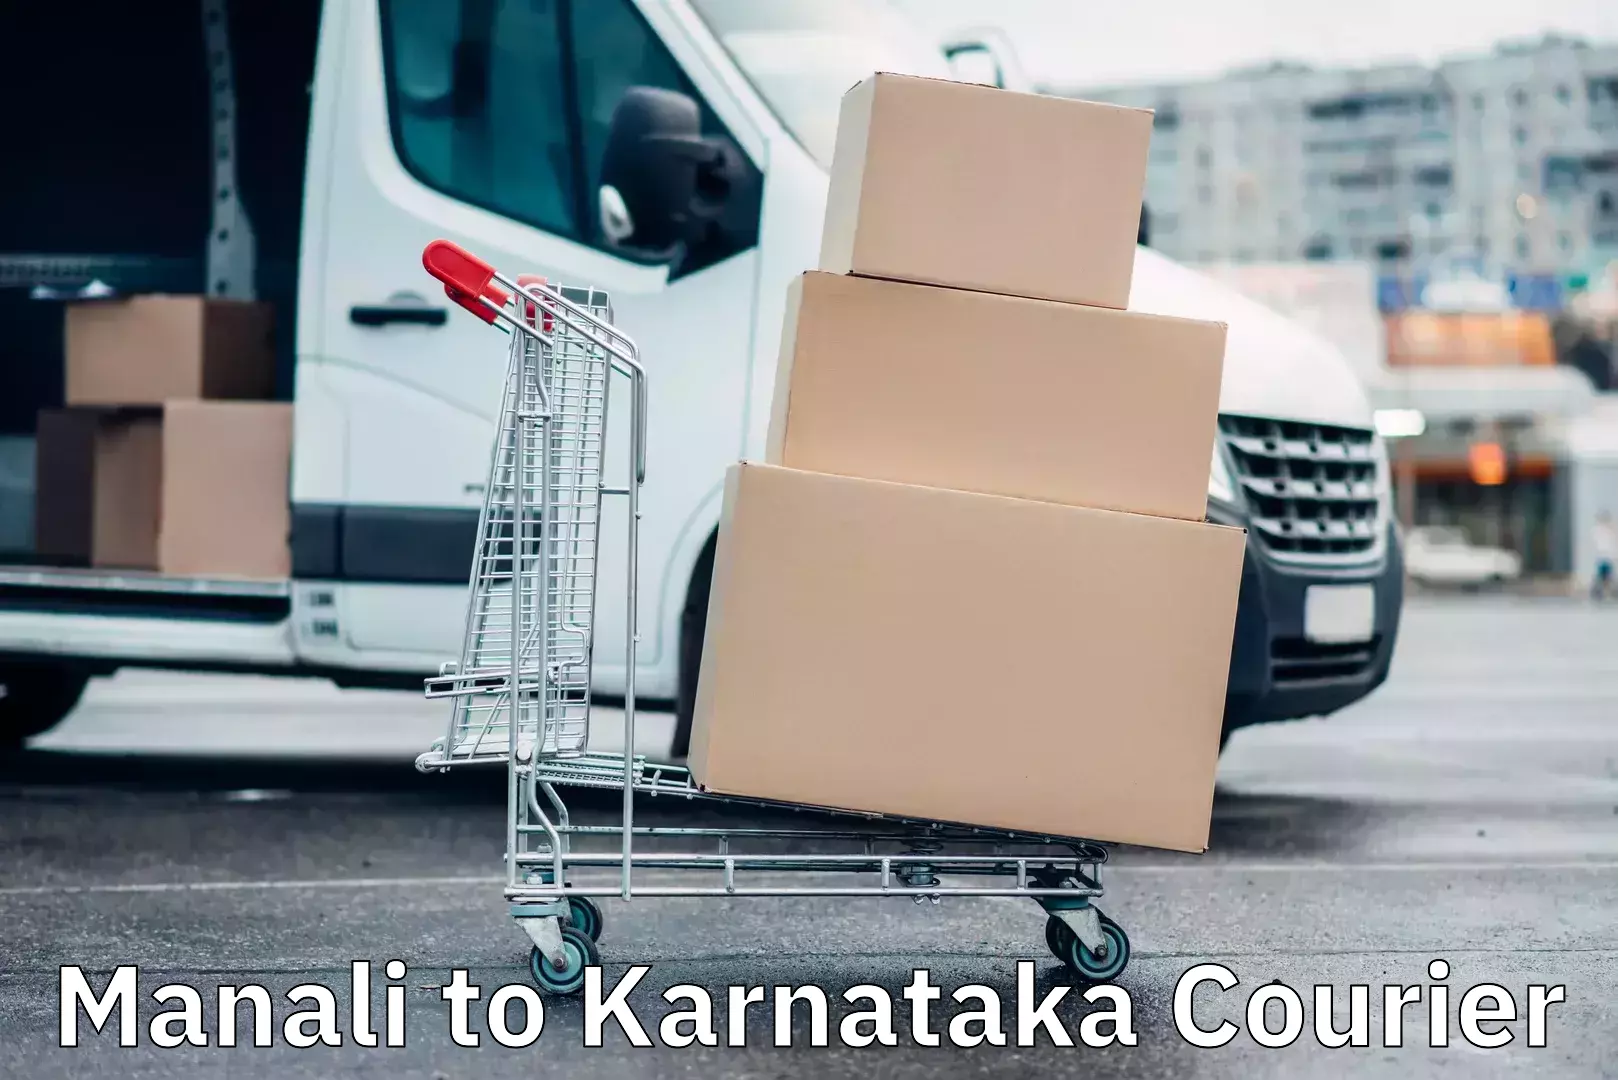 Express courier facilities Manali to Karnataka